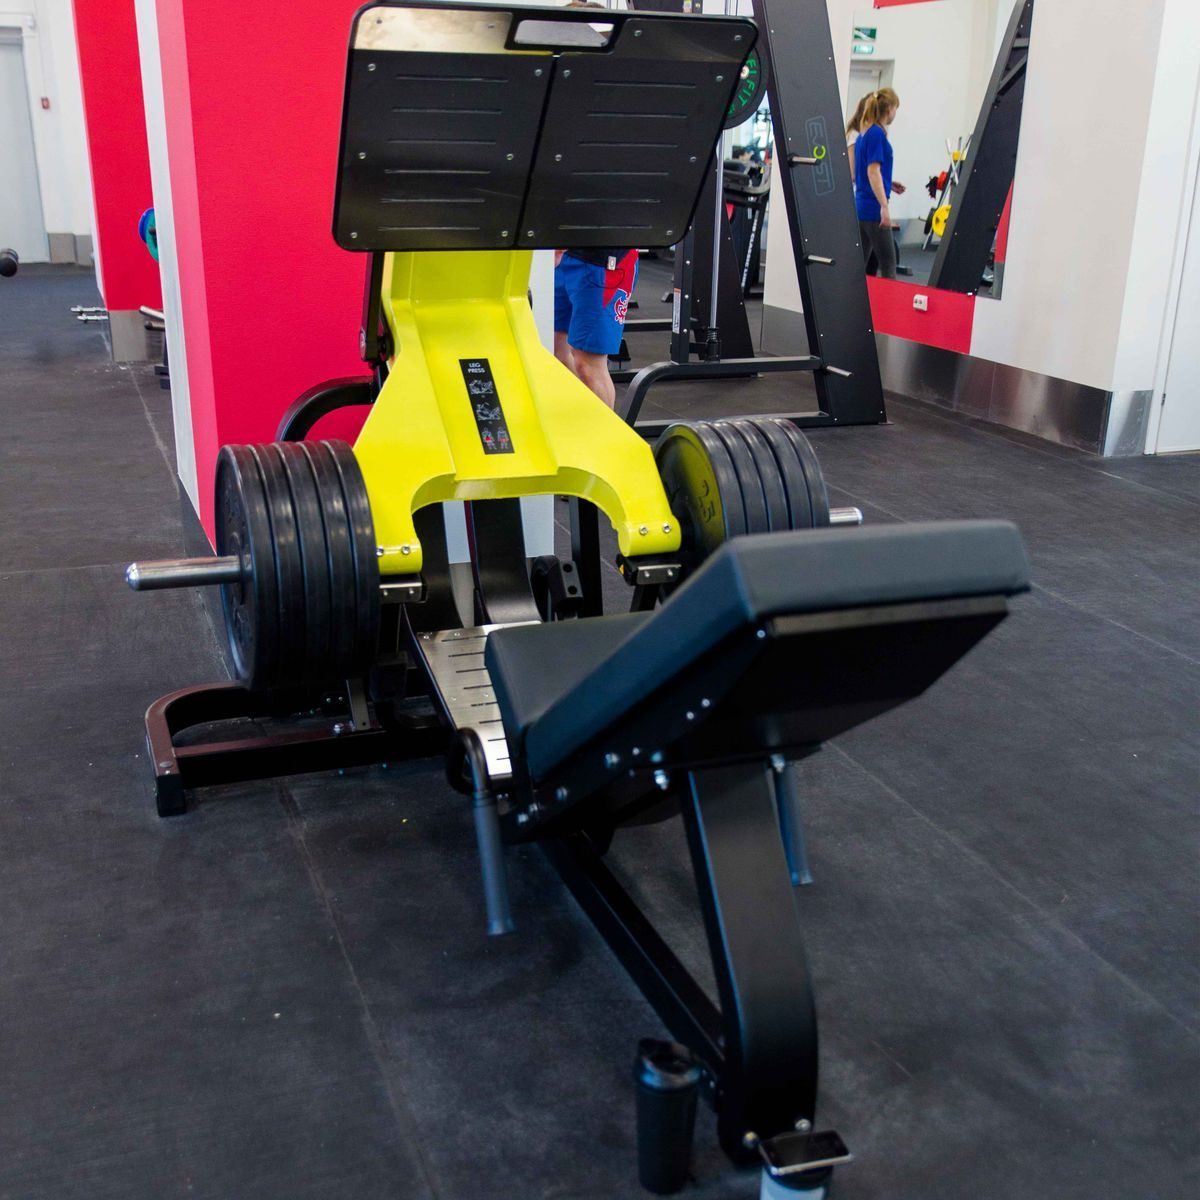 Тренажер на свободных весах DHZ D-950 Жим ногами (Leg Press)